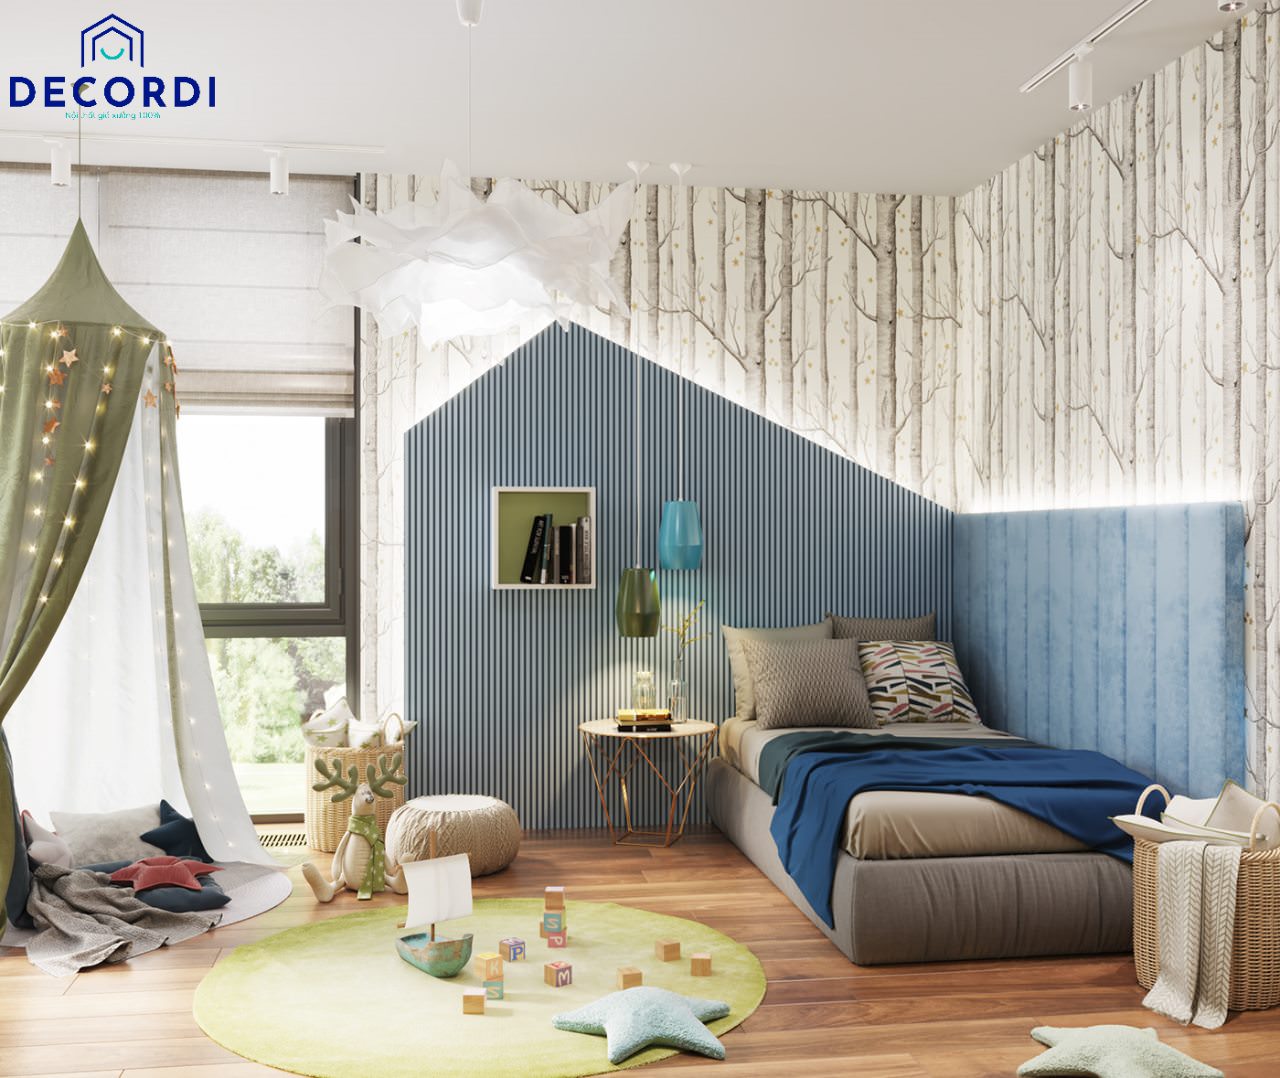 Phòng ngủ với tone màu xanh chủ đạo được thiết kế vô cùng dễ thương cho bé với nhiều góc chức năng khác nhau